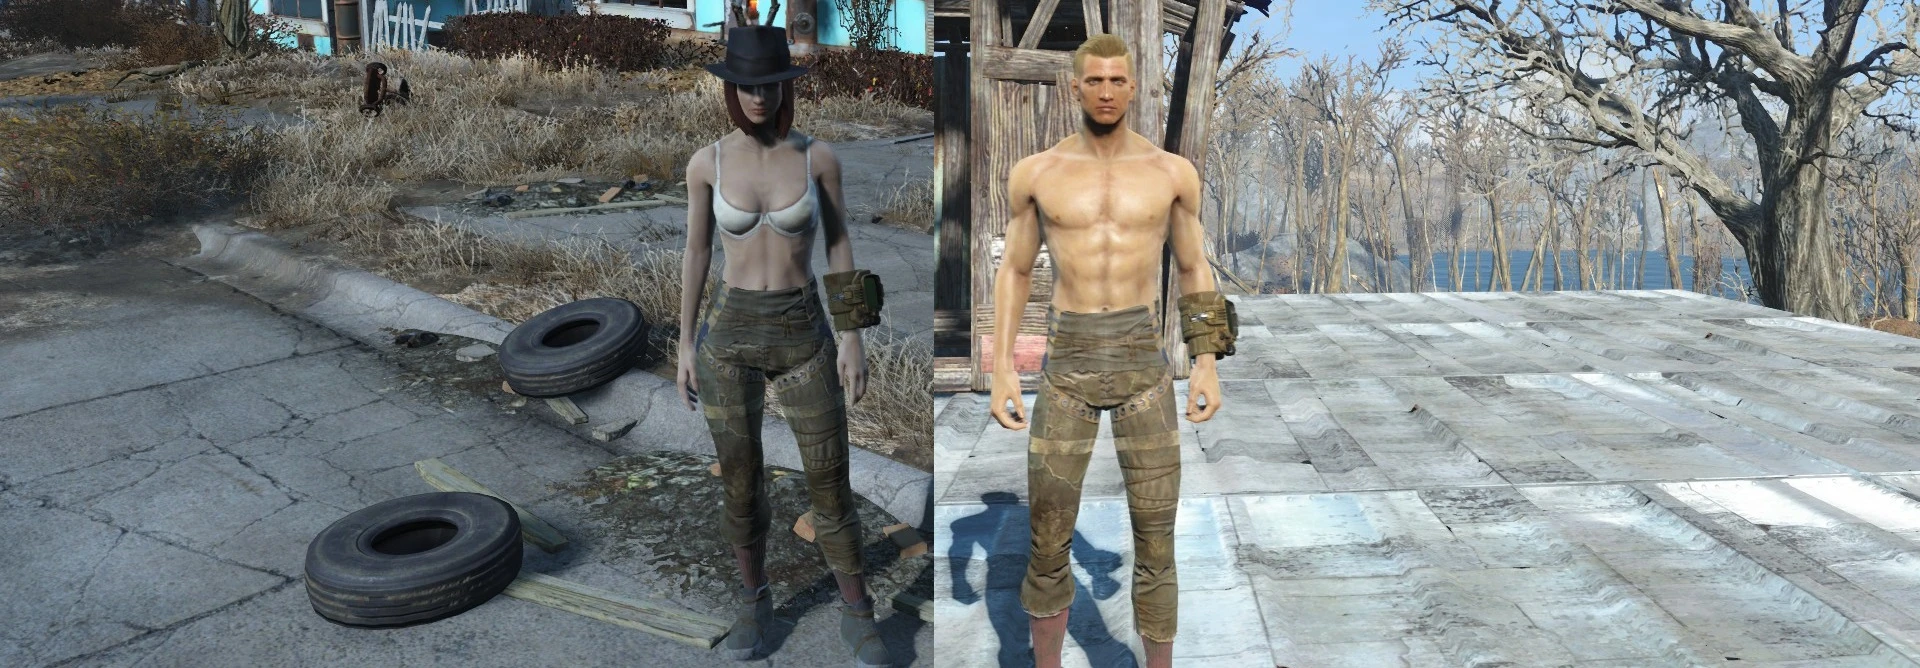 Fallout 4 ретекстур мужского тела фото 112